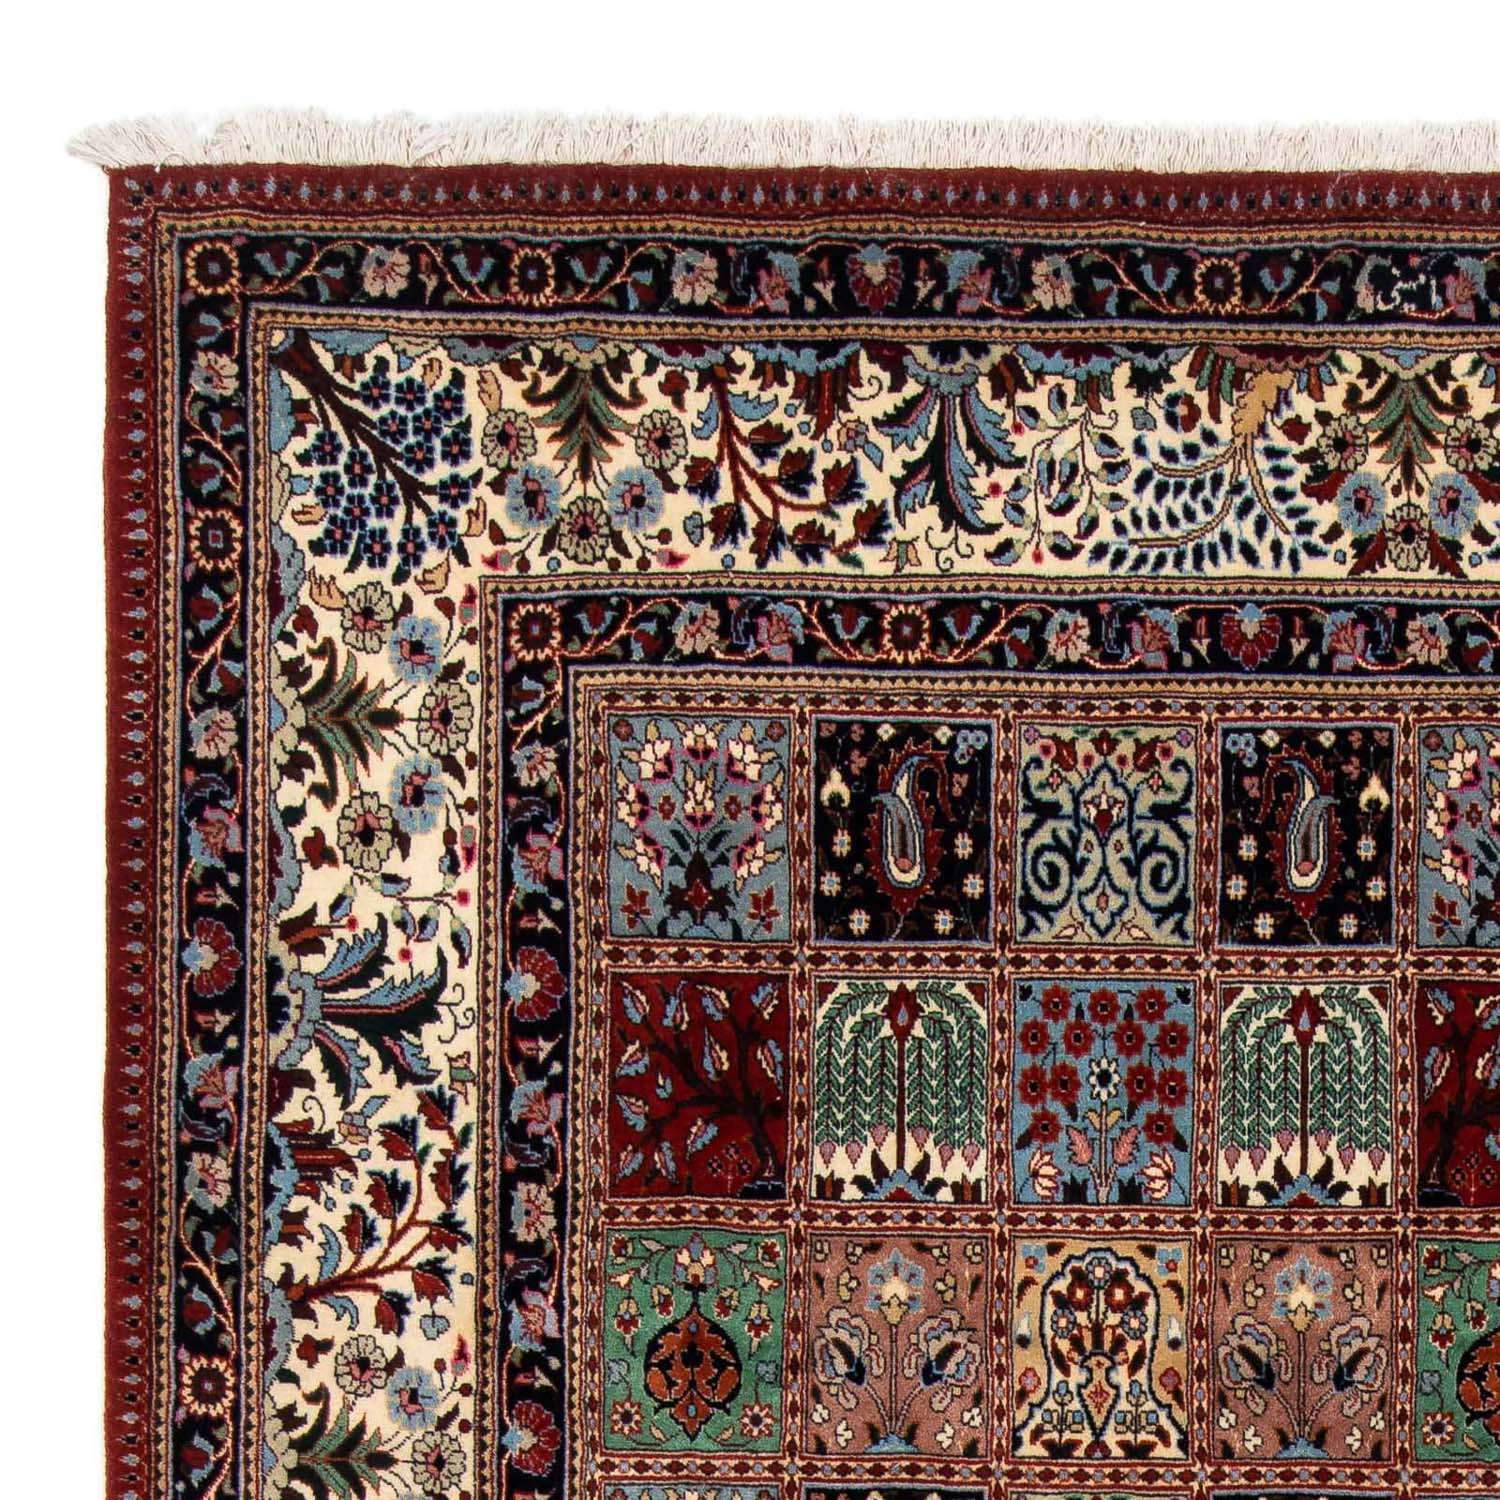 Persisk matta - Classic - 302 x 200 cm - flerfärgad